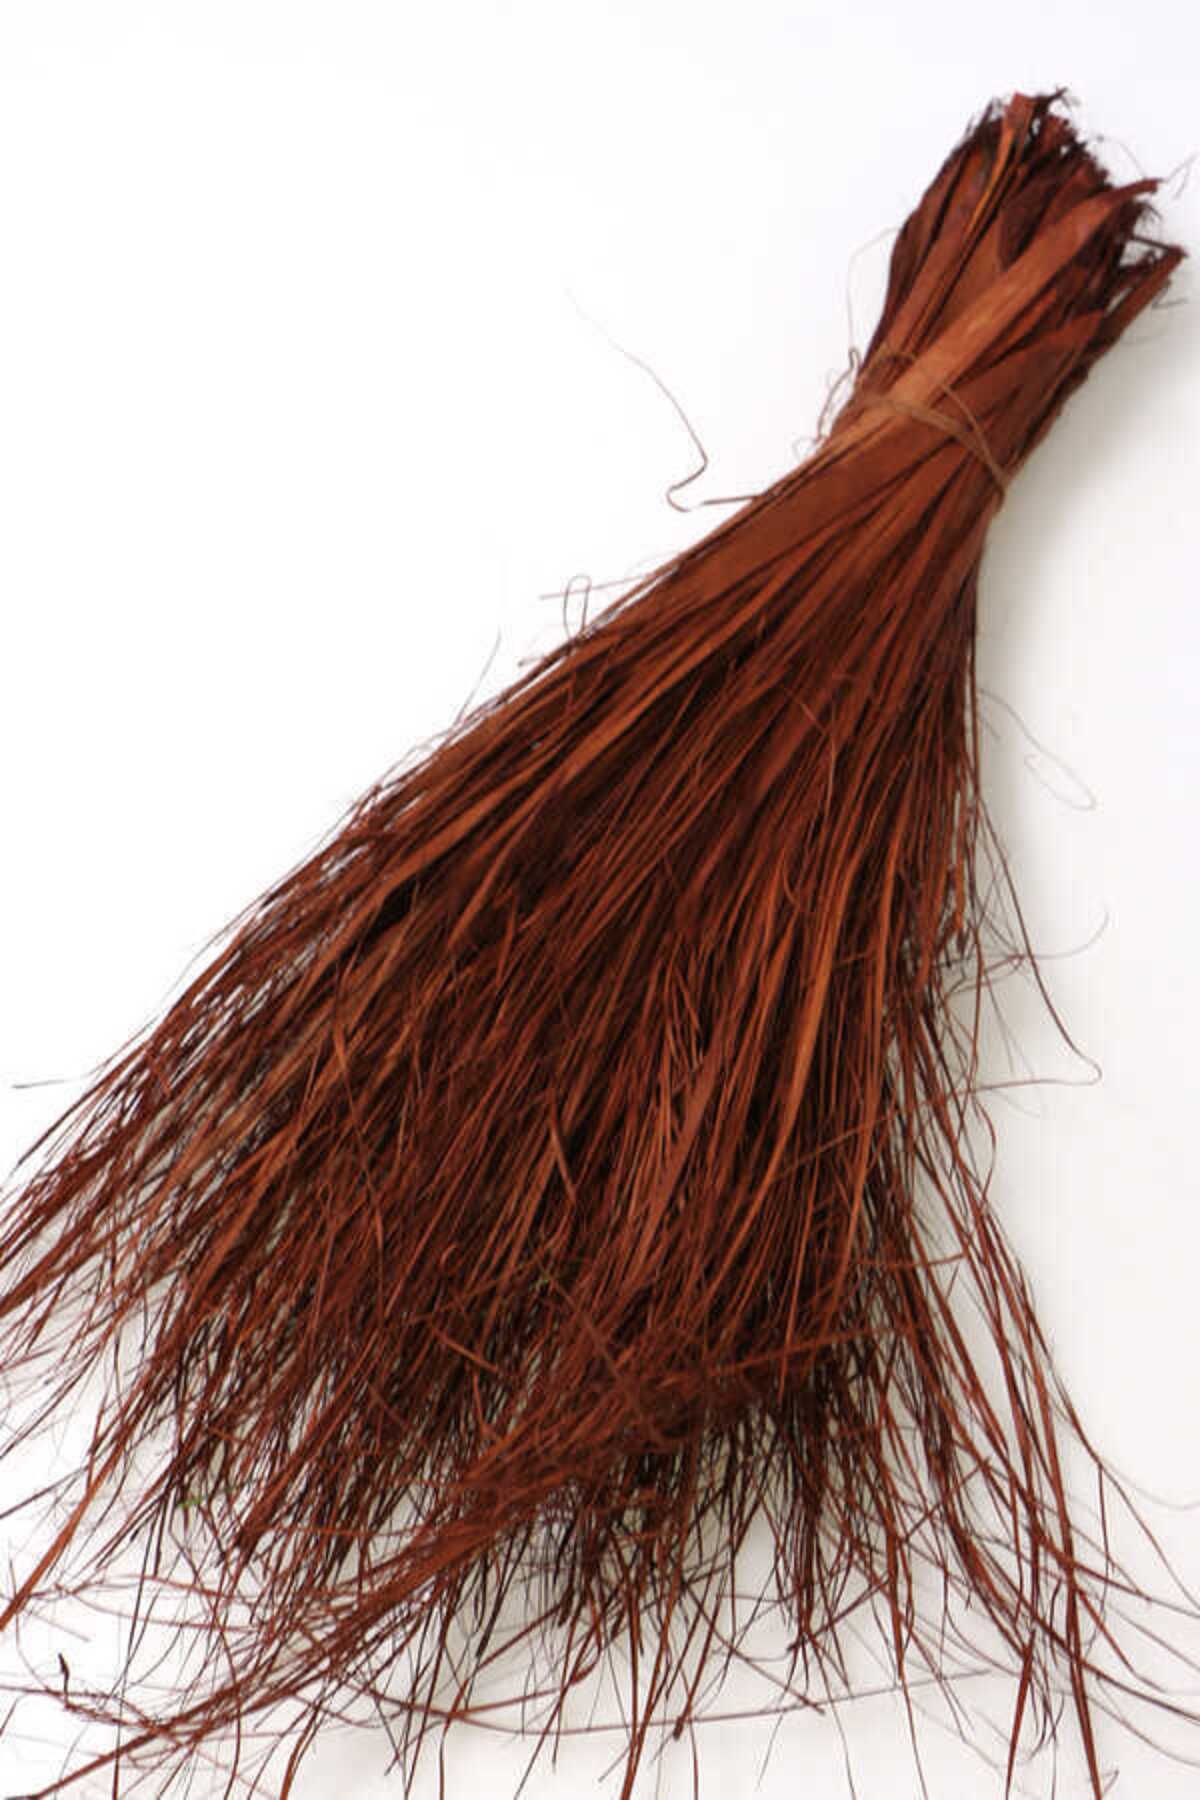 Yapay Çiçek Deposu Tropic Strip Grass Şerit Kurutulmuş Çimen Demeti 40cm Kızıl-Kahve